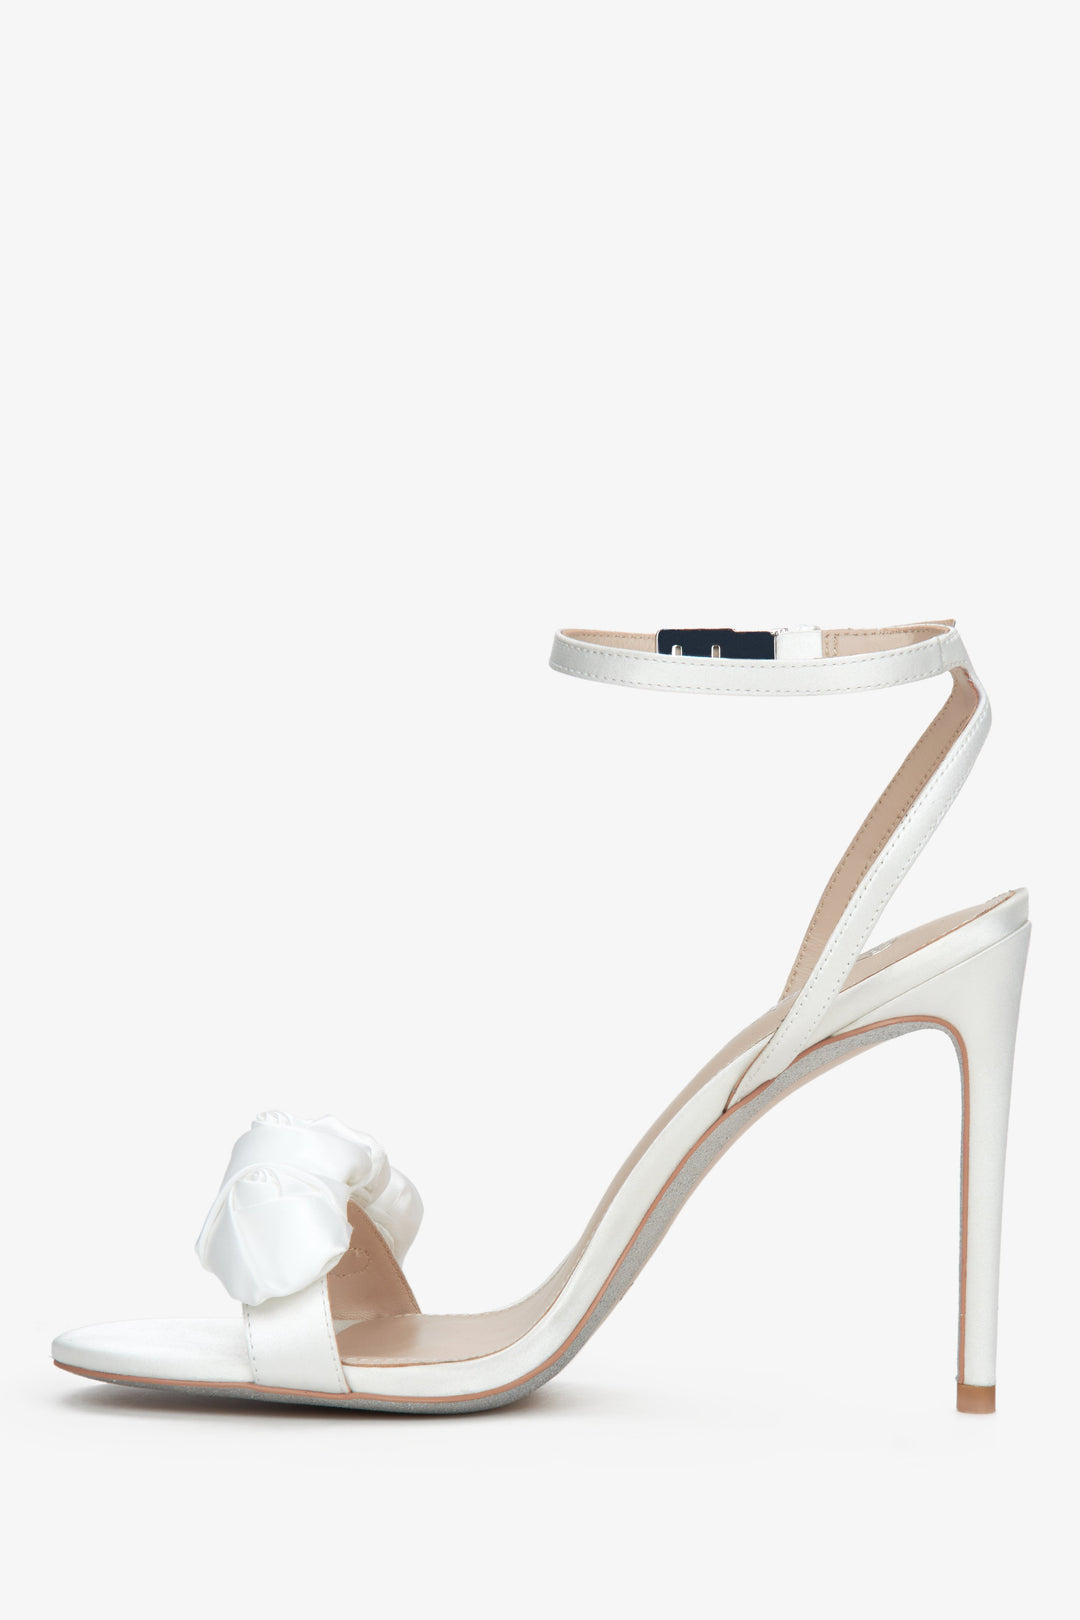 Sandałki damskie na wysokiej szpilce Estro w kolorze białym - profil buta.